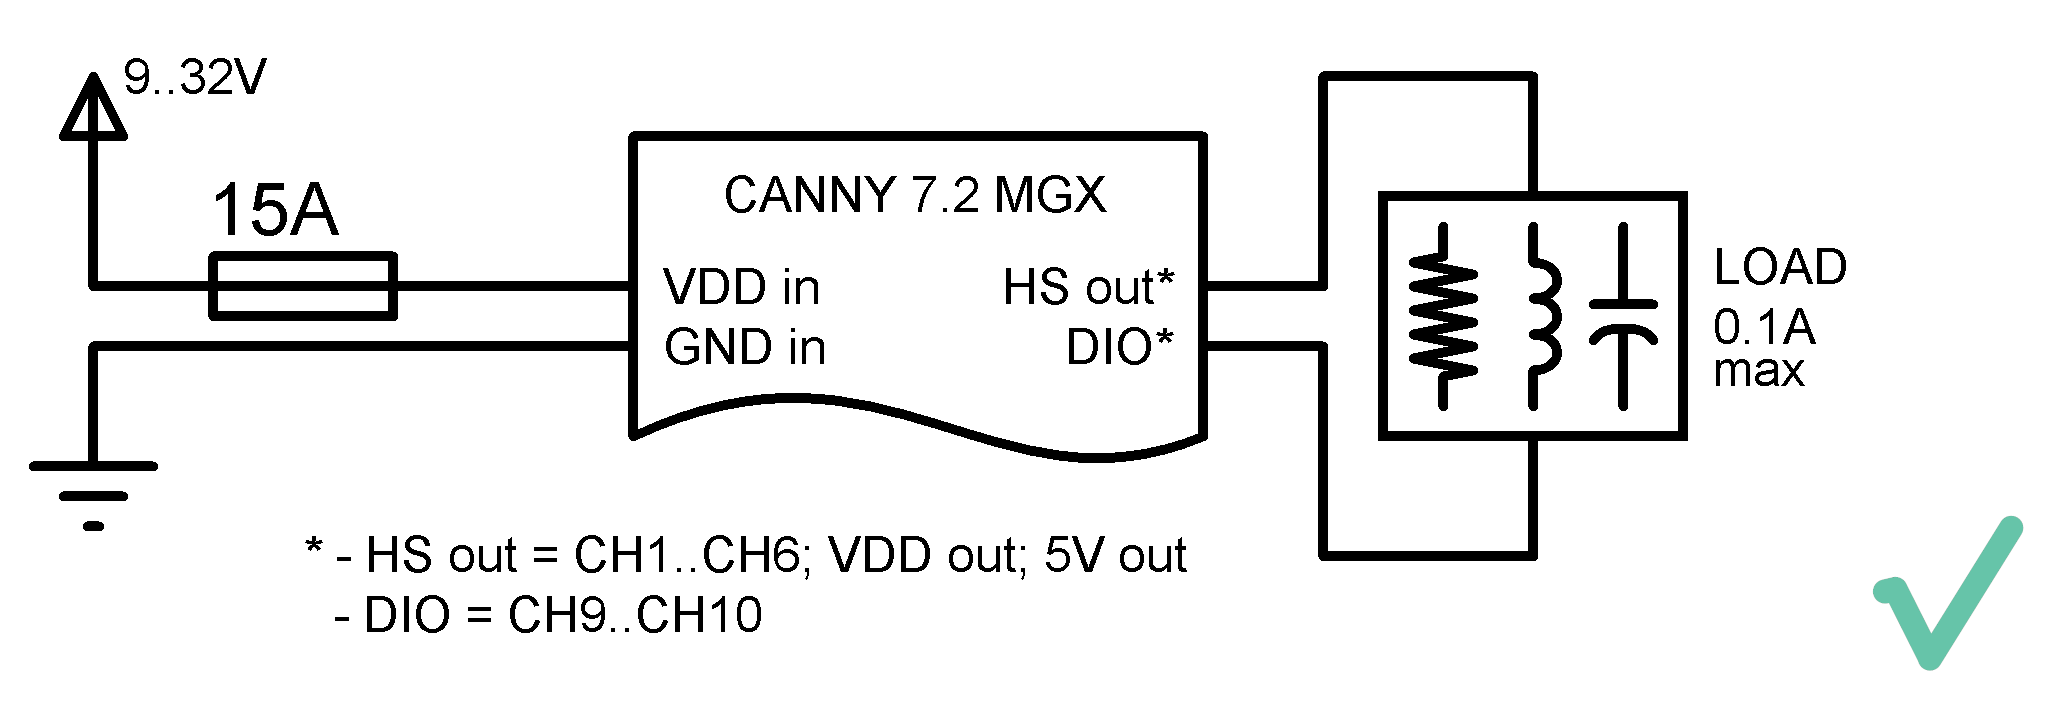 Допустимая схема подключения нагрузки к цифровым каналам ввода-вывода контроллера